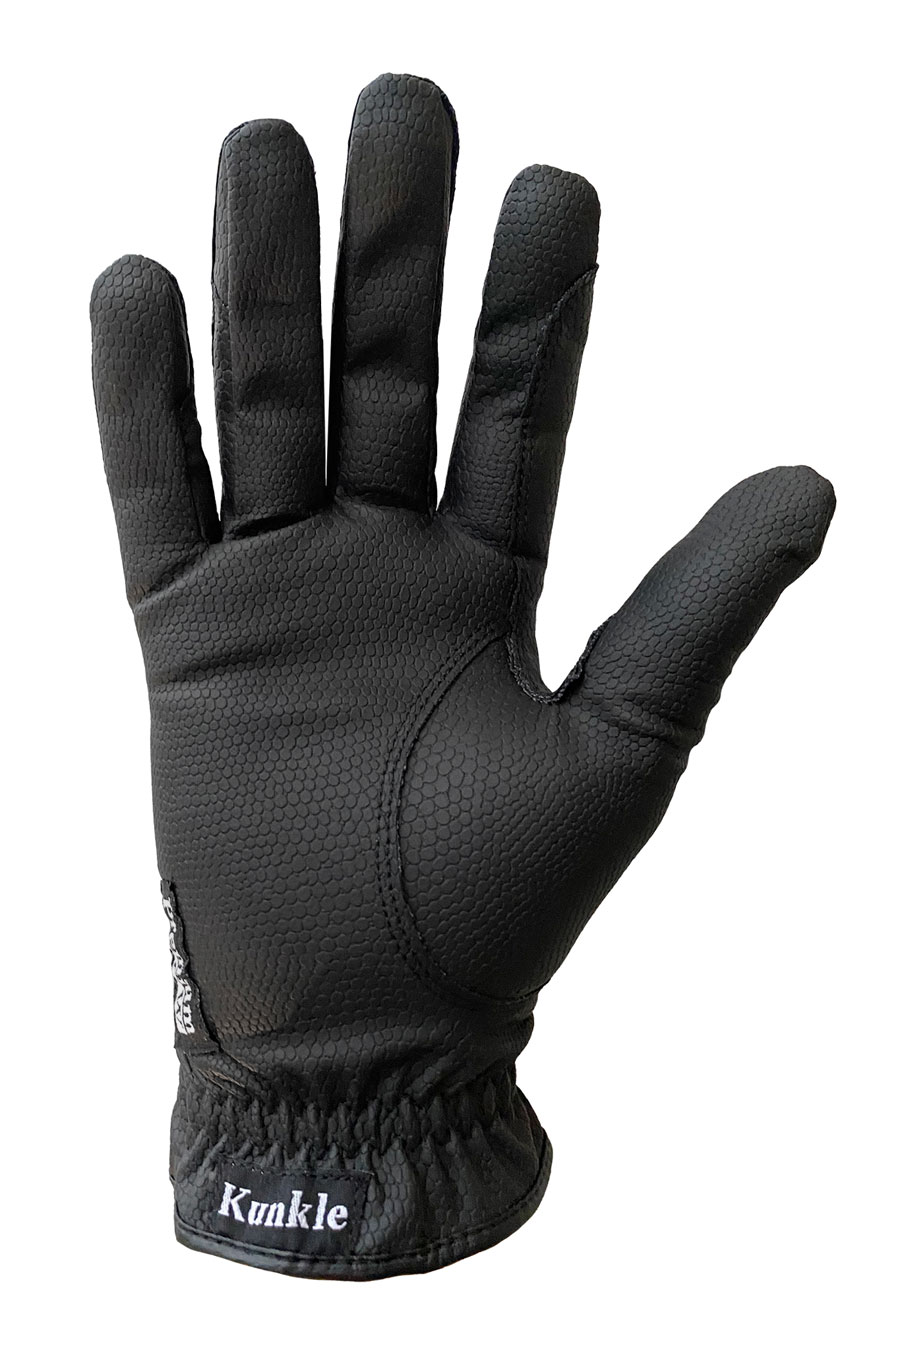 Kunkle Show Gloves Black